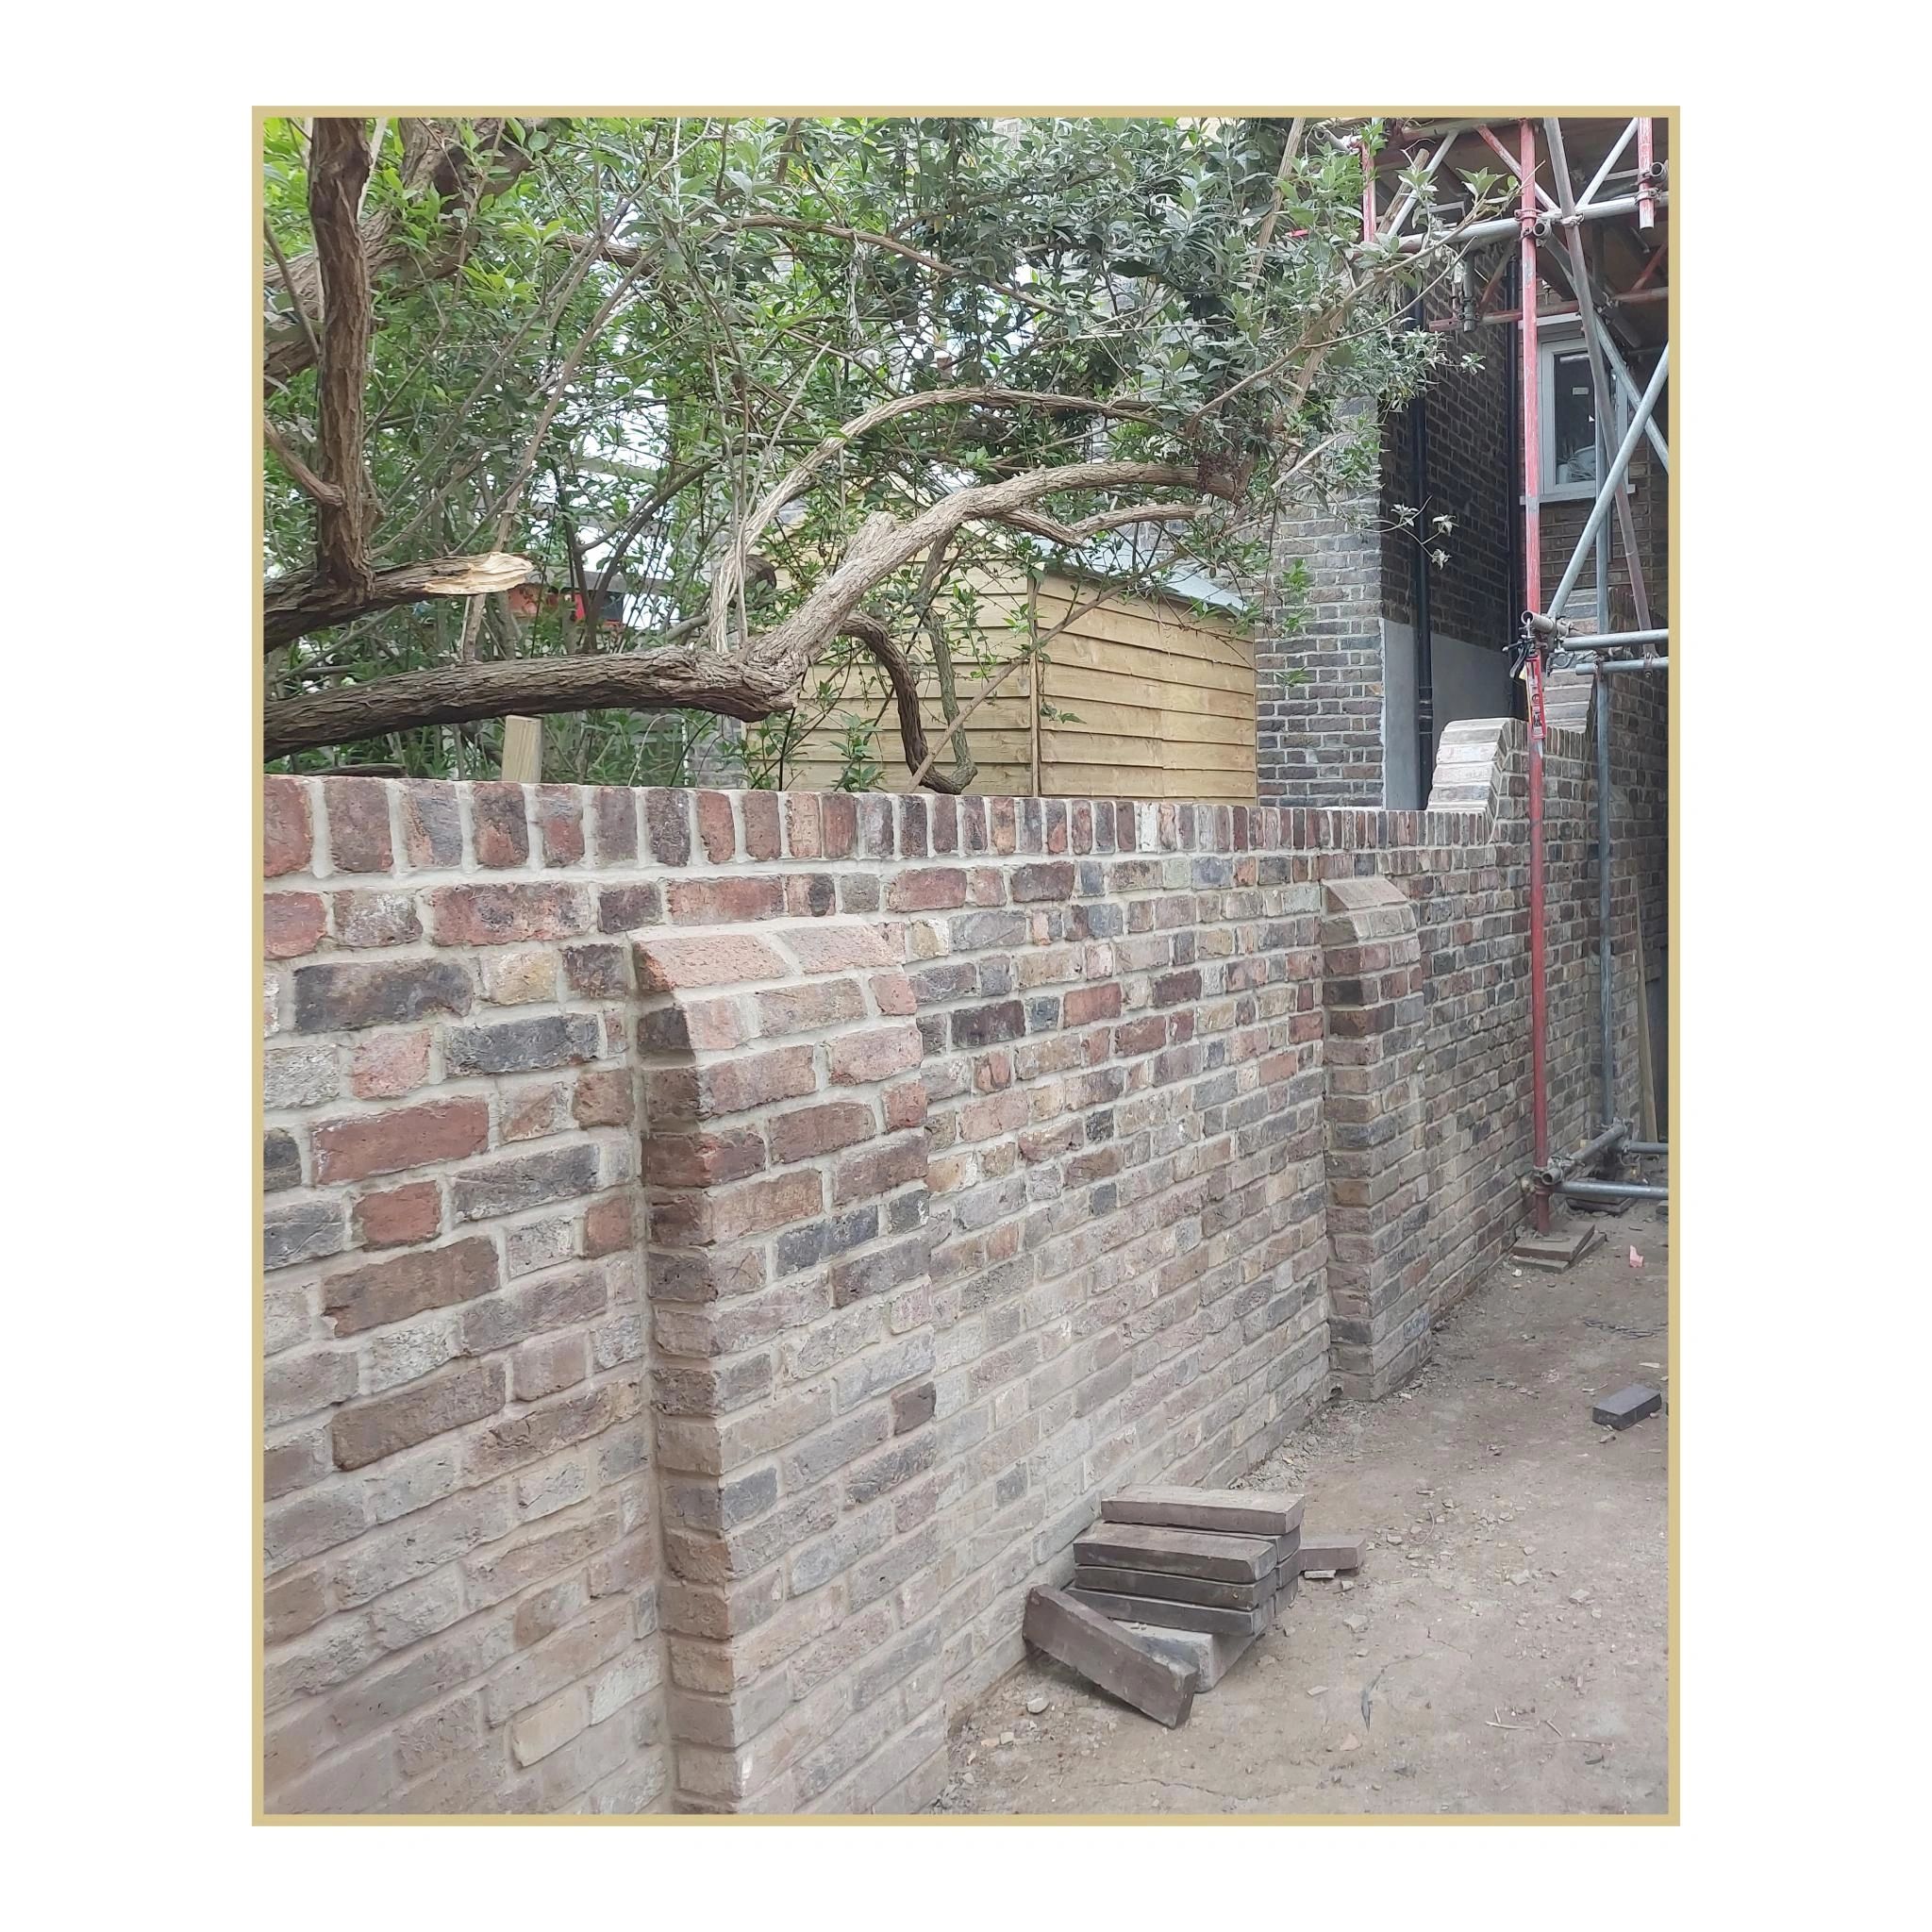 garden wall
brick garden wall
garden retaining wall
garden wall blocks
garden flower wall





